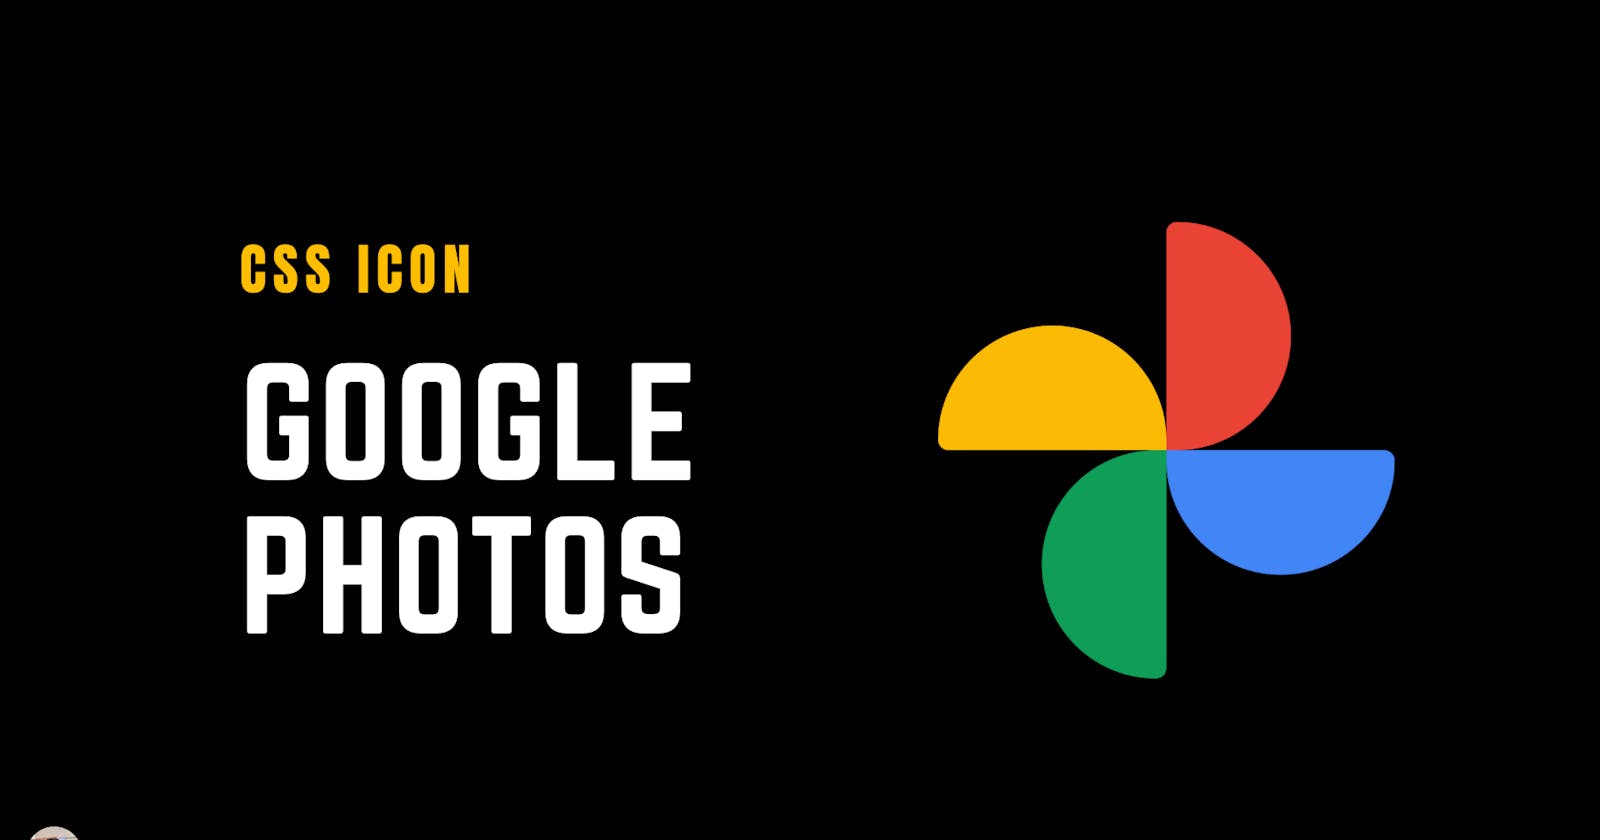 CSS Icon: Google Photos